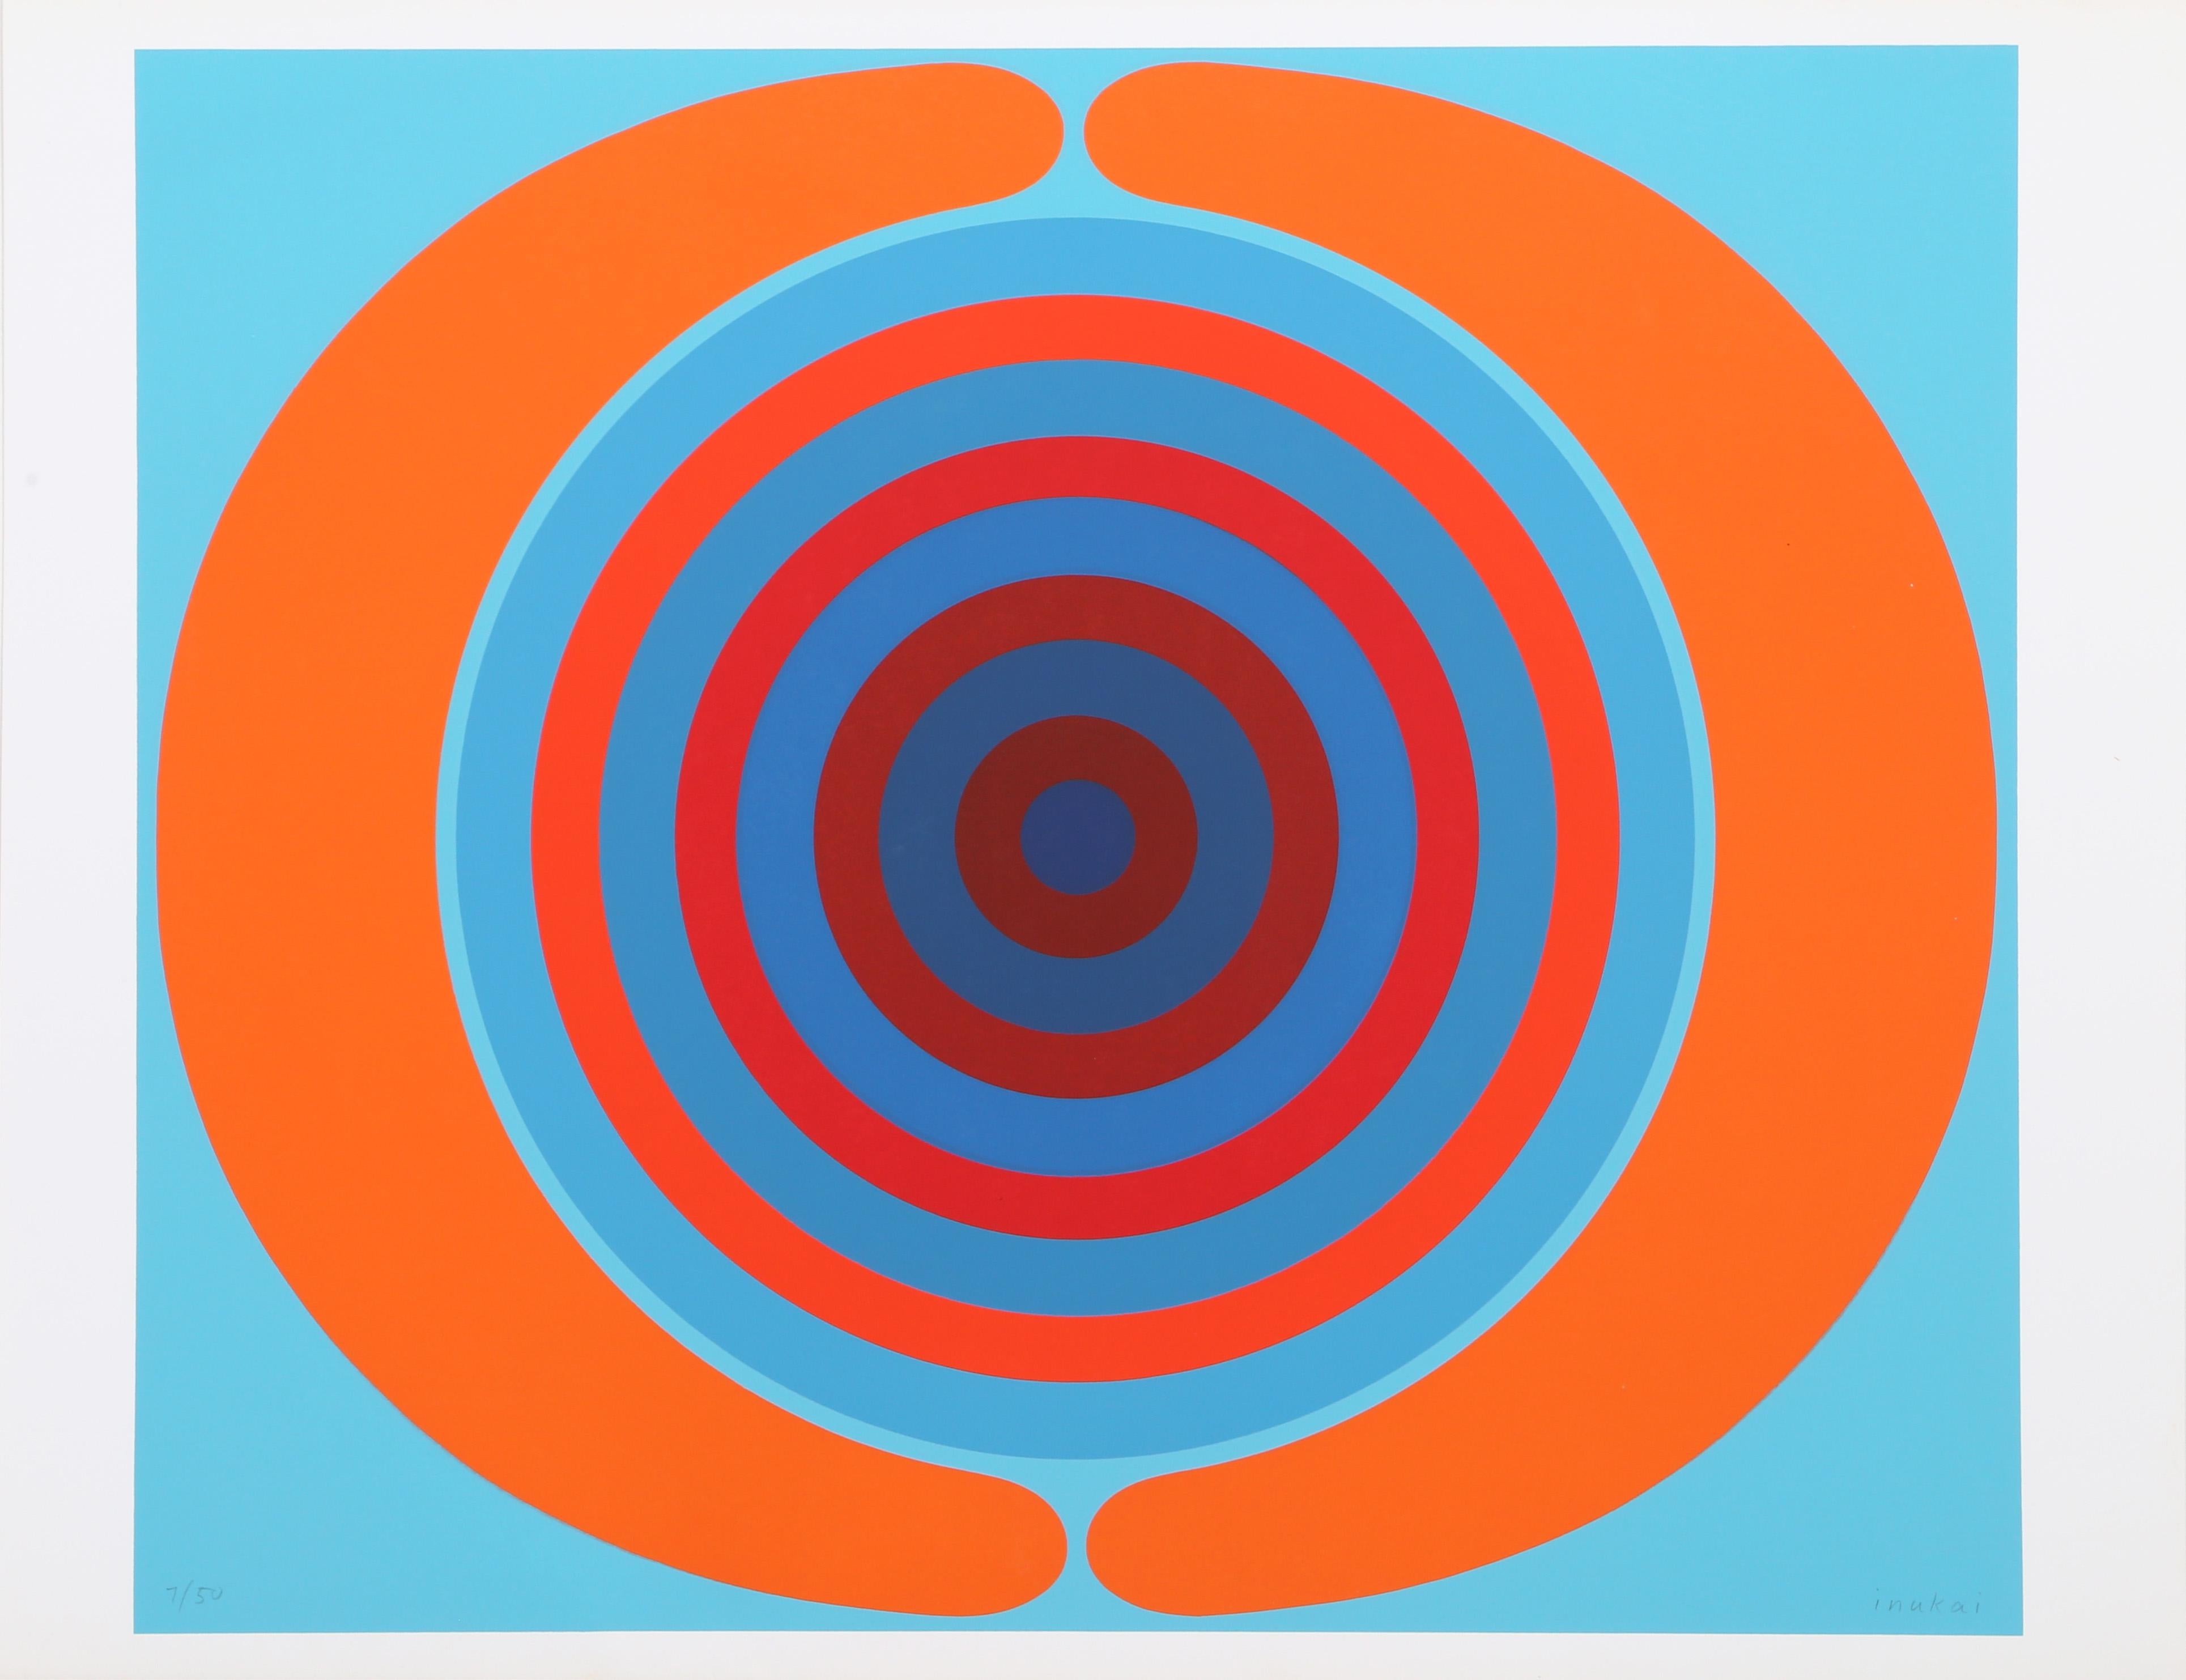 Artistics : Kyohei Inukai, Américain (1913 - 1985)
Titre : Spirale
Année : circa 1970
Support : Sérigraphie, signée et numérotée au crayon
Édition : 50
Taille de l'image : 21.5 x 25.5 pouces
Taille : 23 x 29.75 in. (58.42 x 75.57 cm)